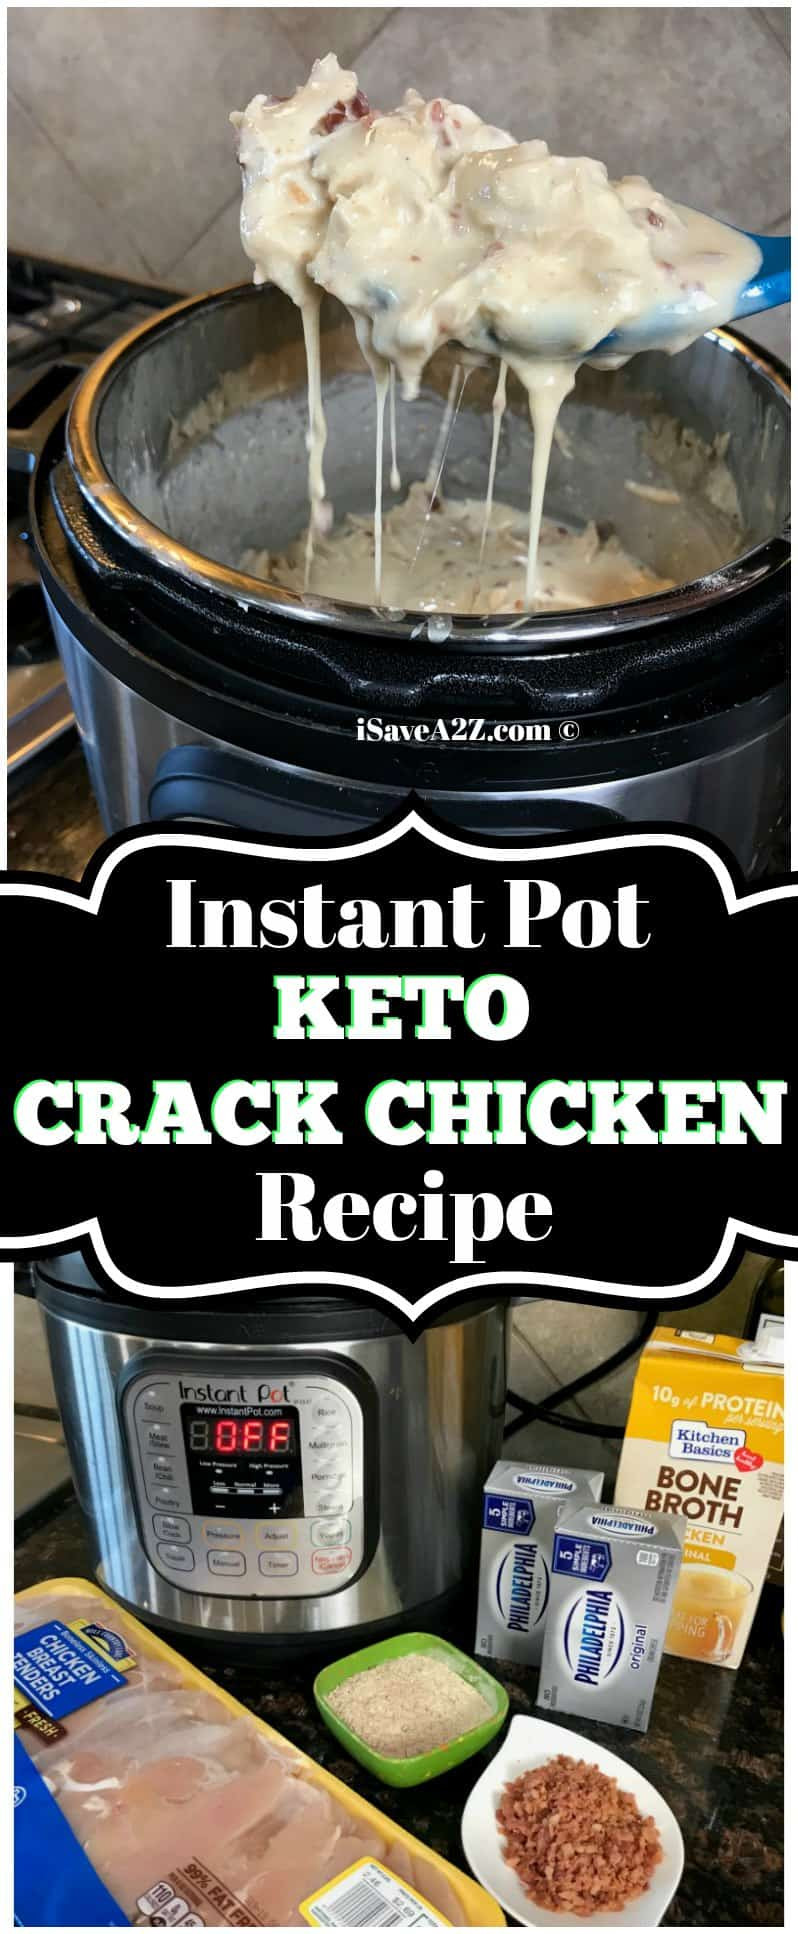 Instapot Keto Chicken
 Instant Pot Keto Crack Chicken Recipe iSaveA2Z